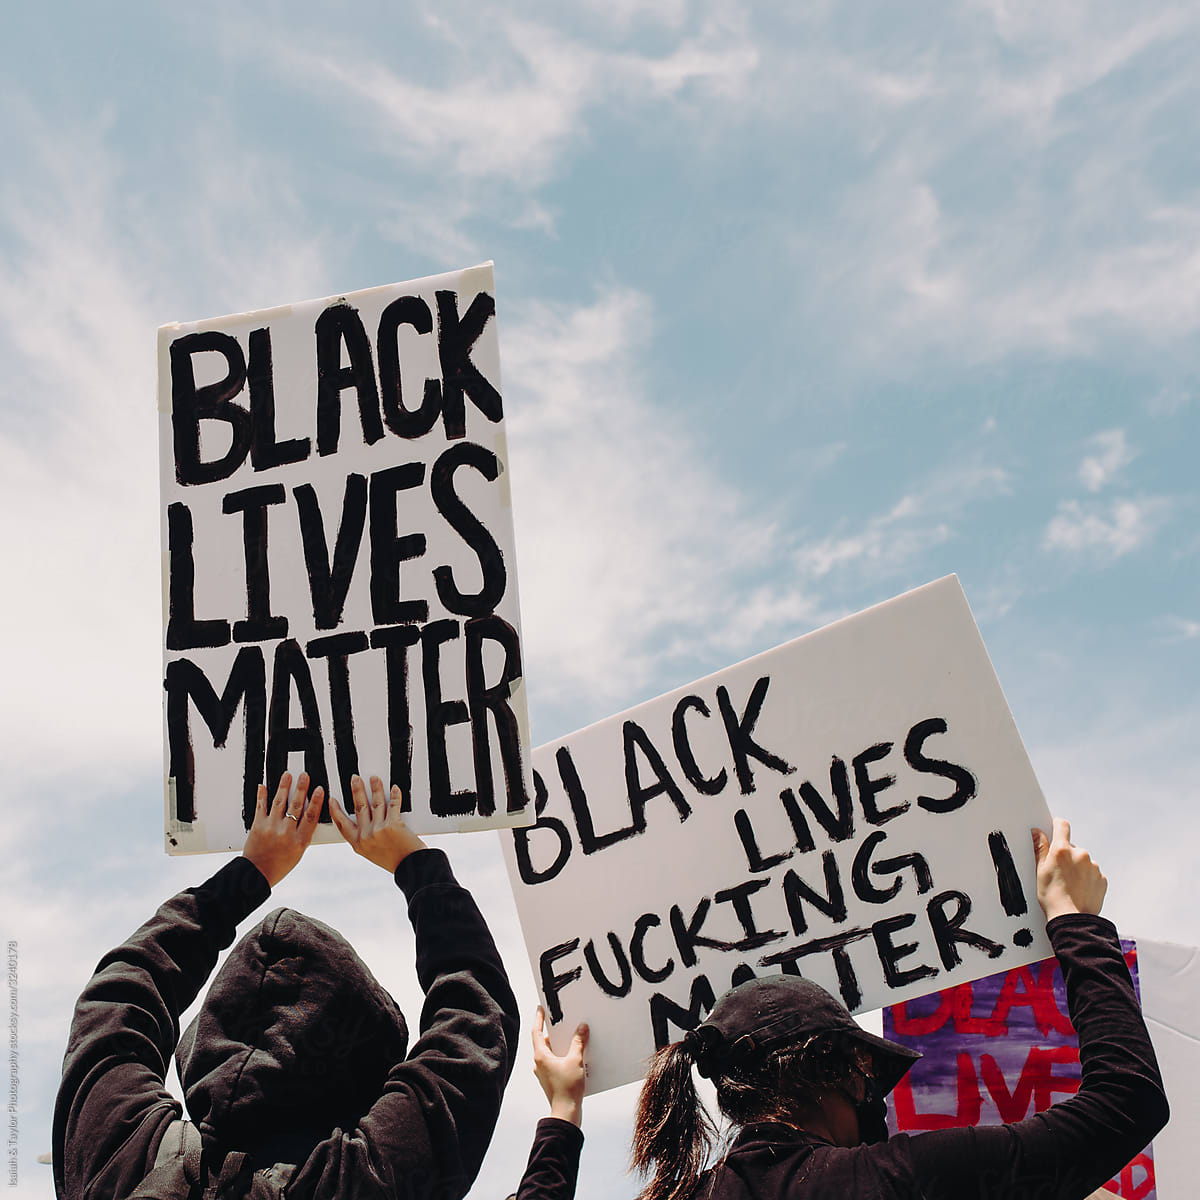 Protest signs for black lives matter